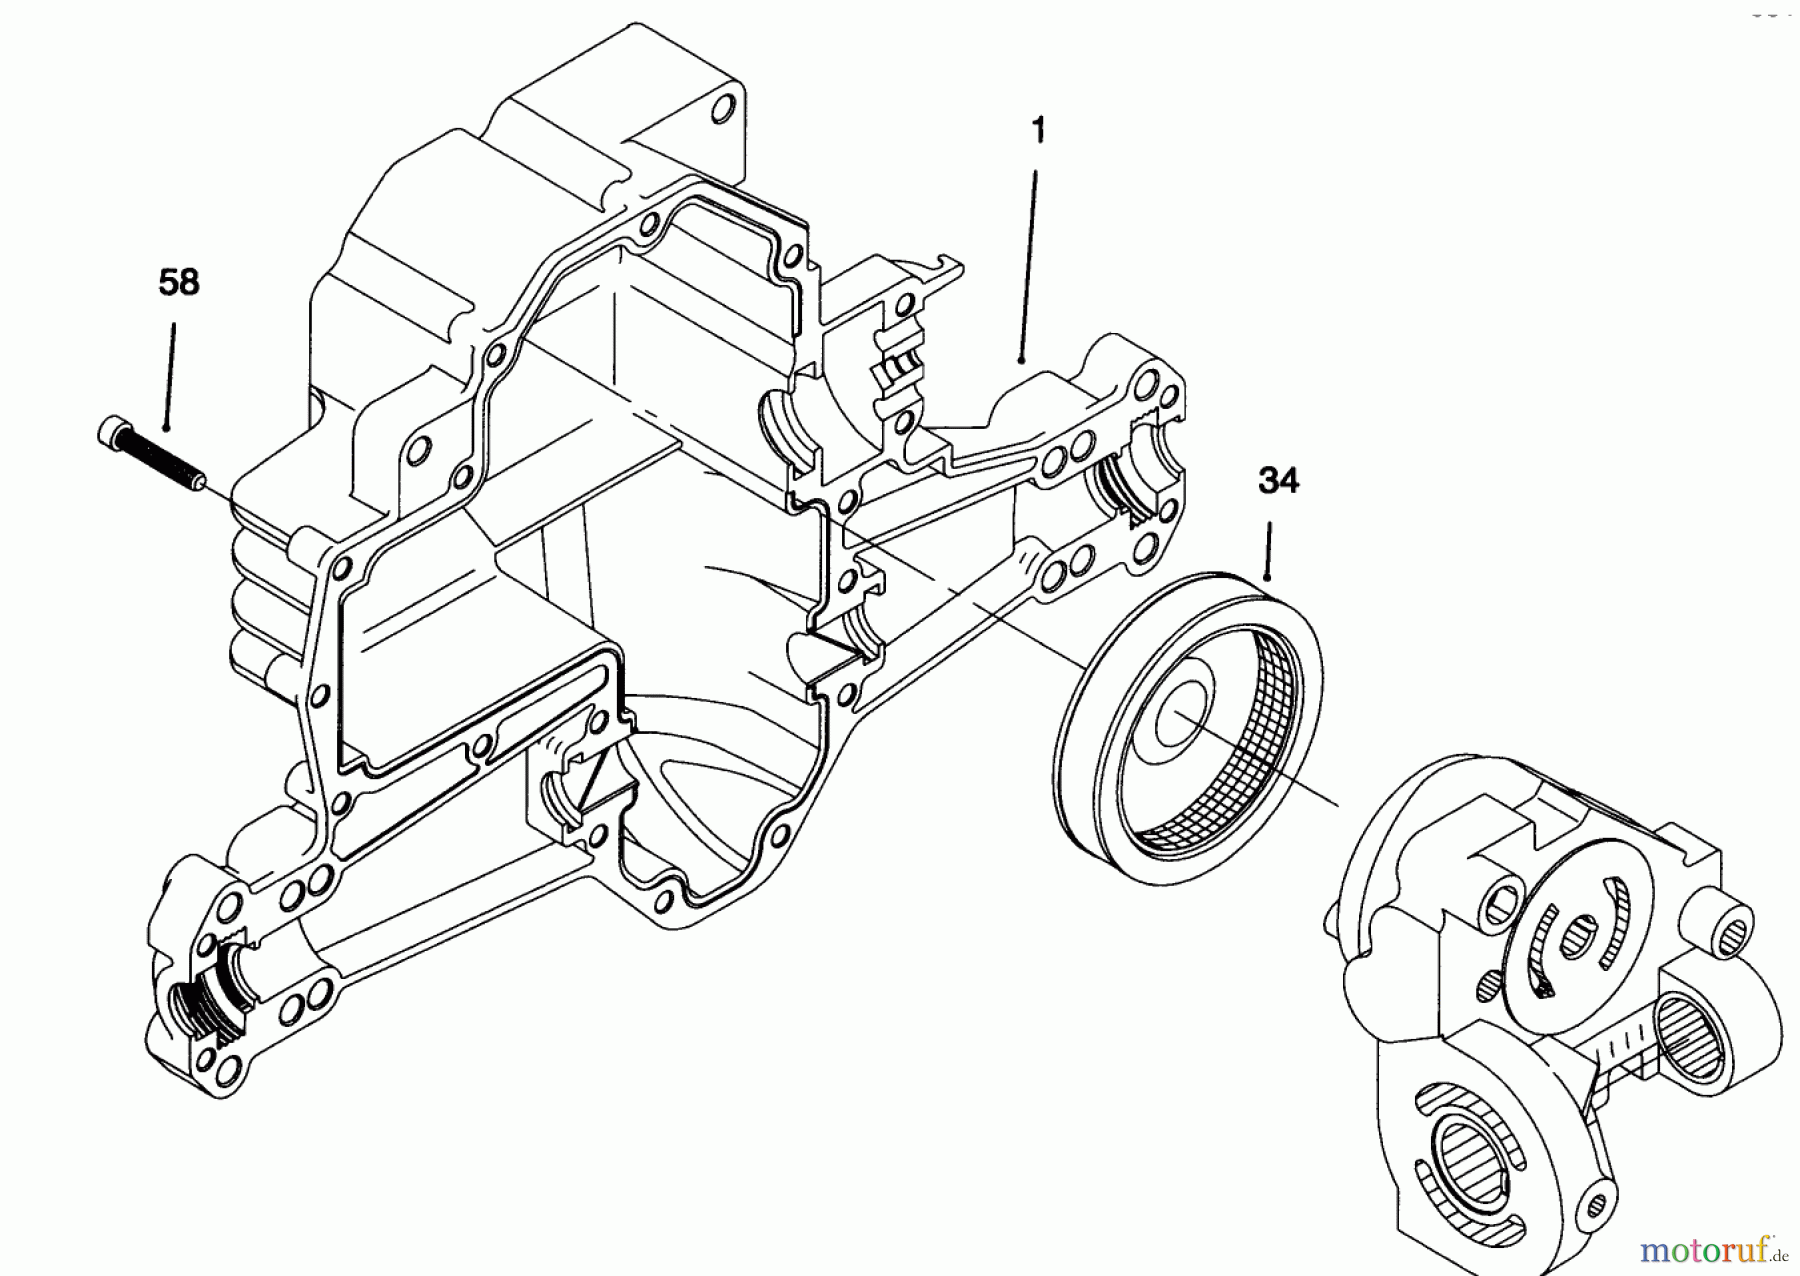  Toro Neu Mowers, Lawn & Garden Tractor Seite 1 71192 (15-44HXL) - Toro 15-44HXL Lawn Tractor, 1996 (6900001-6999999) HYDRO TRANSAXLE ASSEMBLY #4